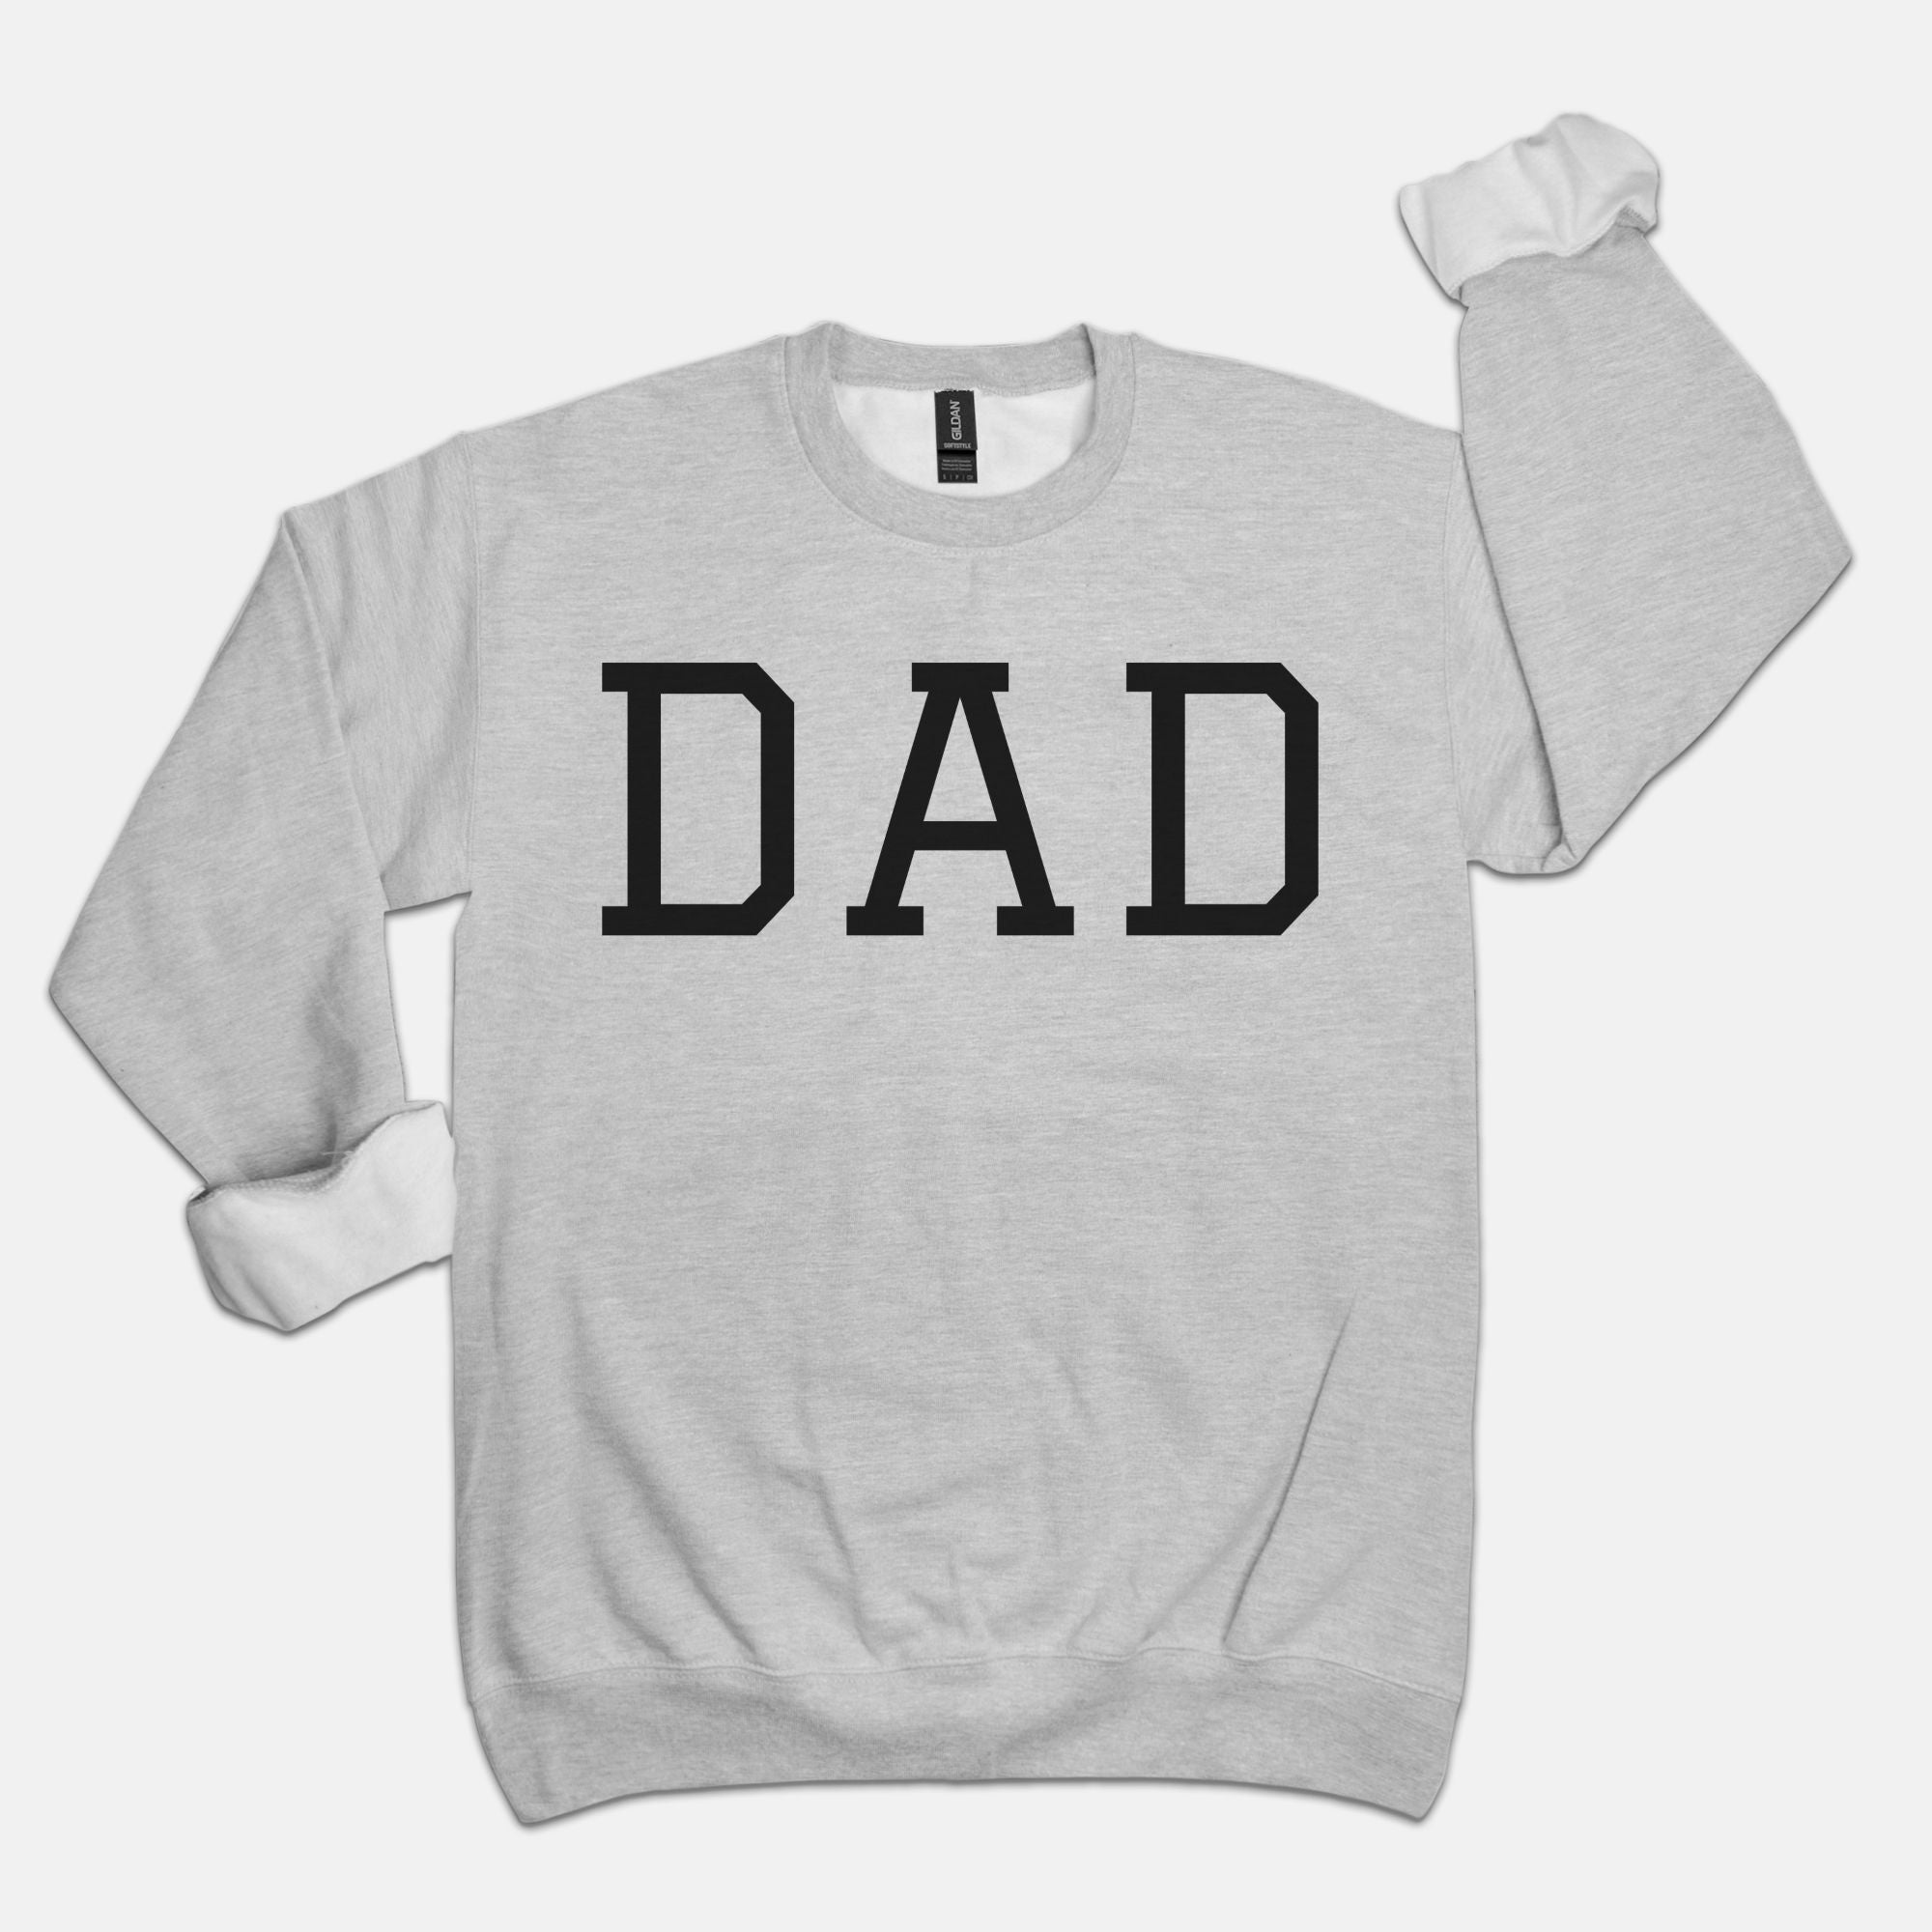 DAD Sweatshirt